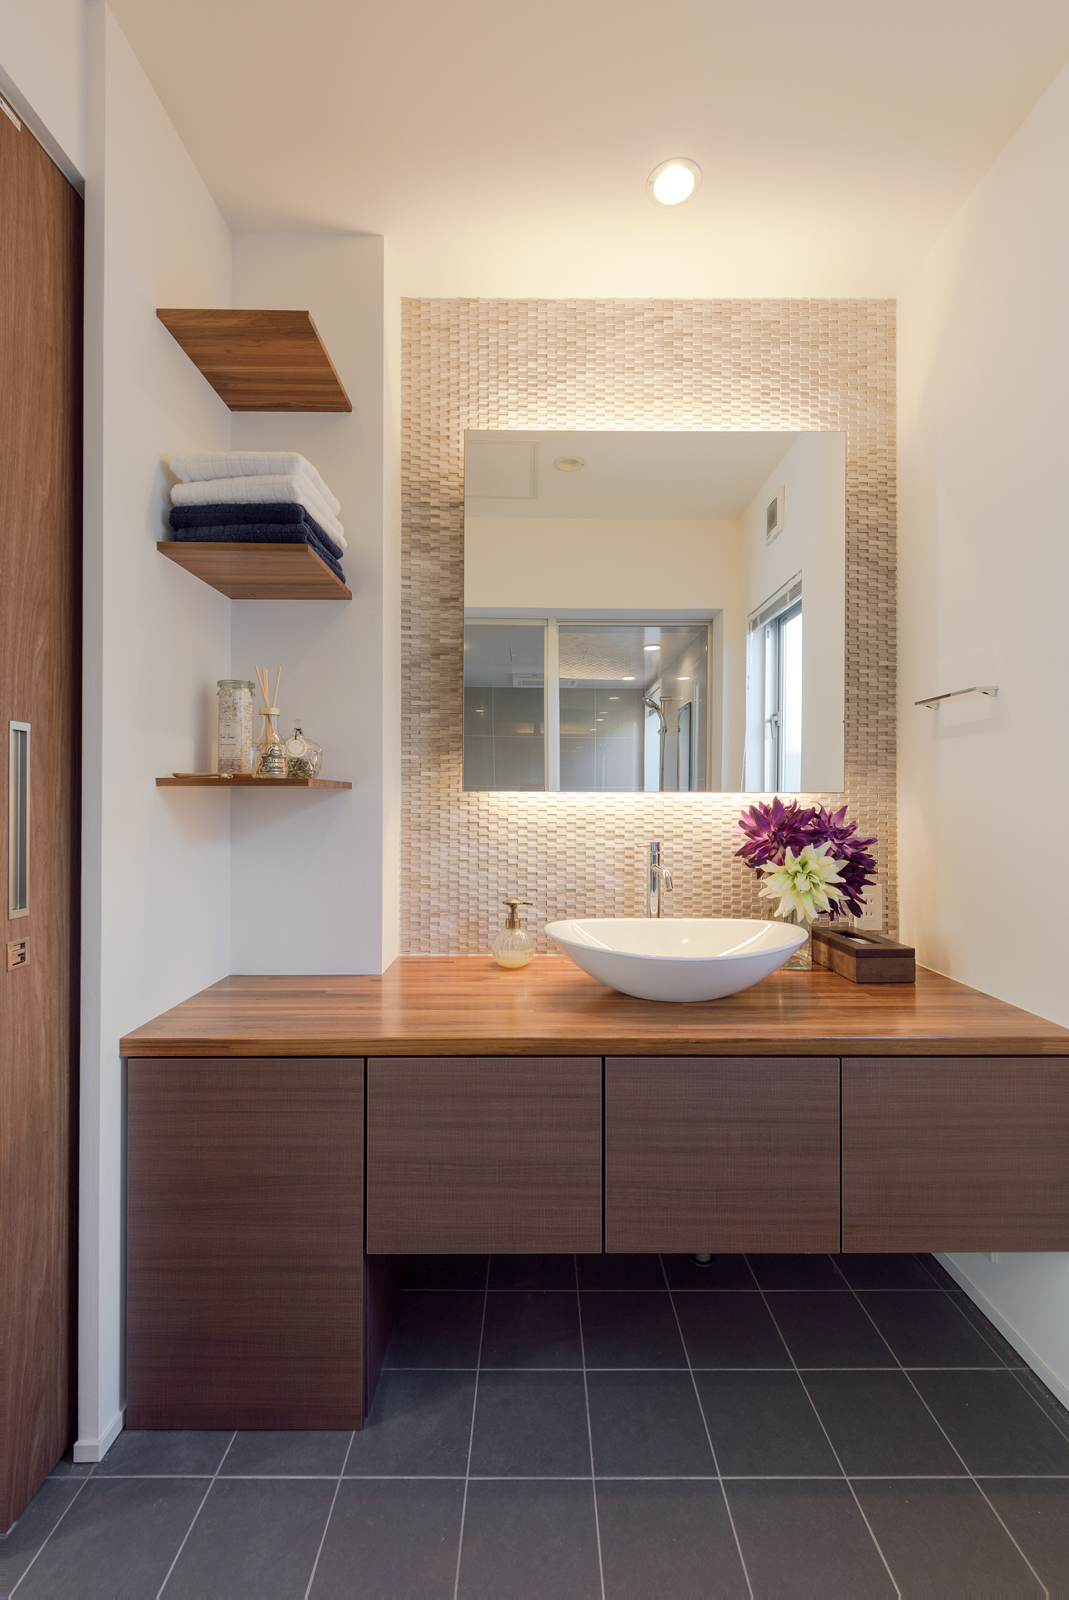 造作の洗面スペース
間接照明を入れた正方形の鏡や、高級感あるグレーのタイルがホテルライクな空間を演出しています